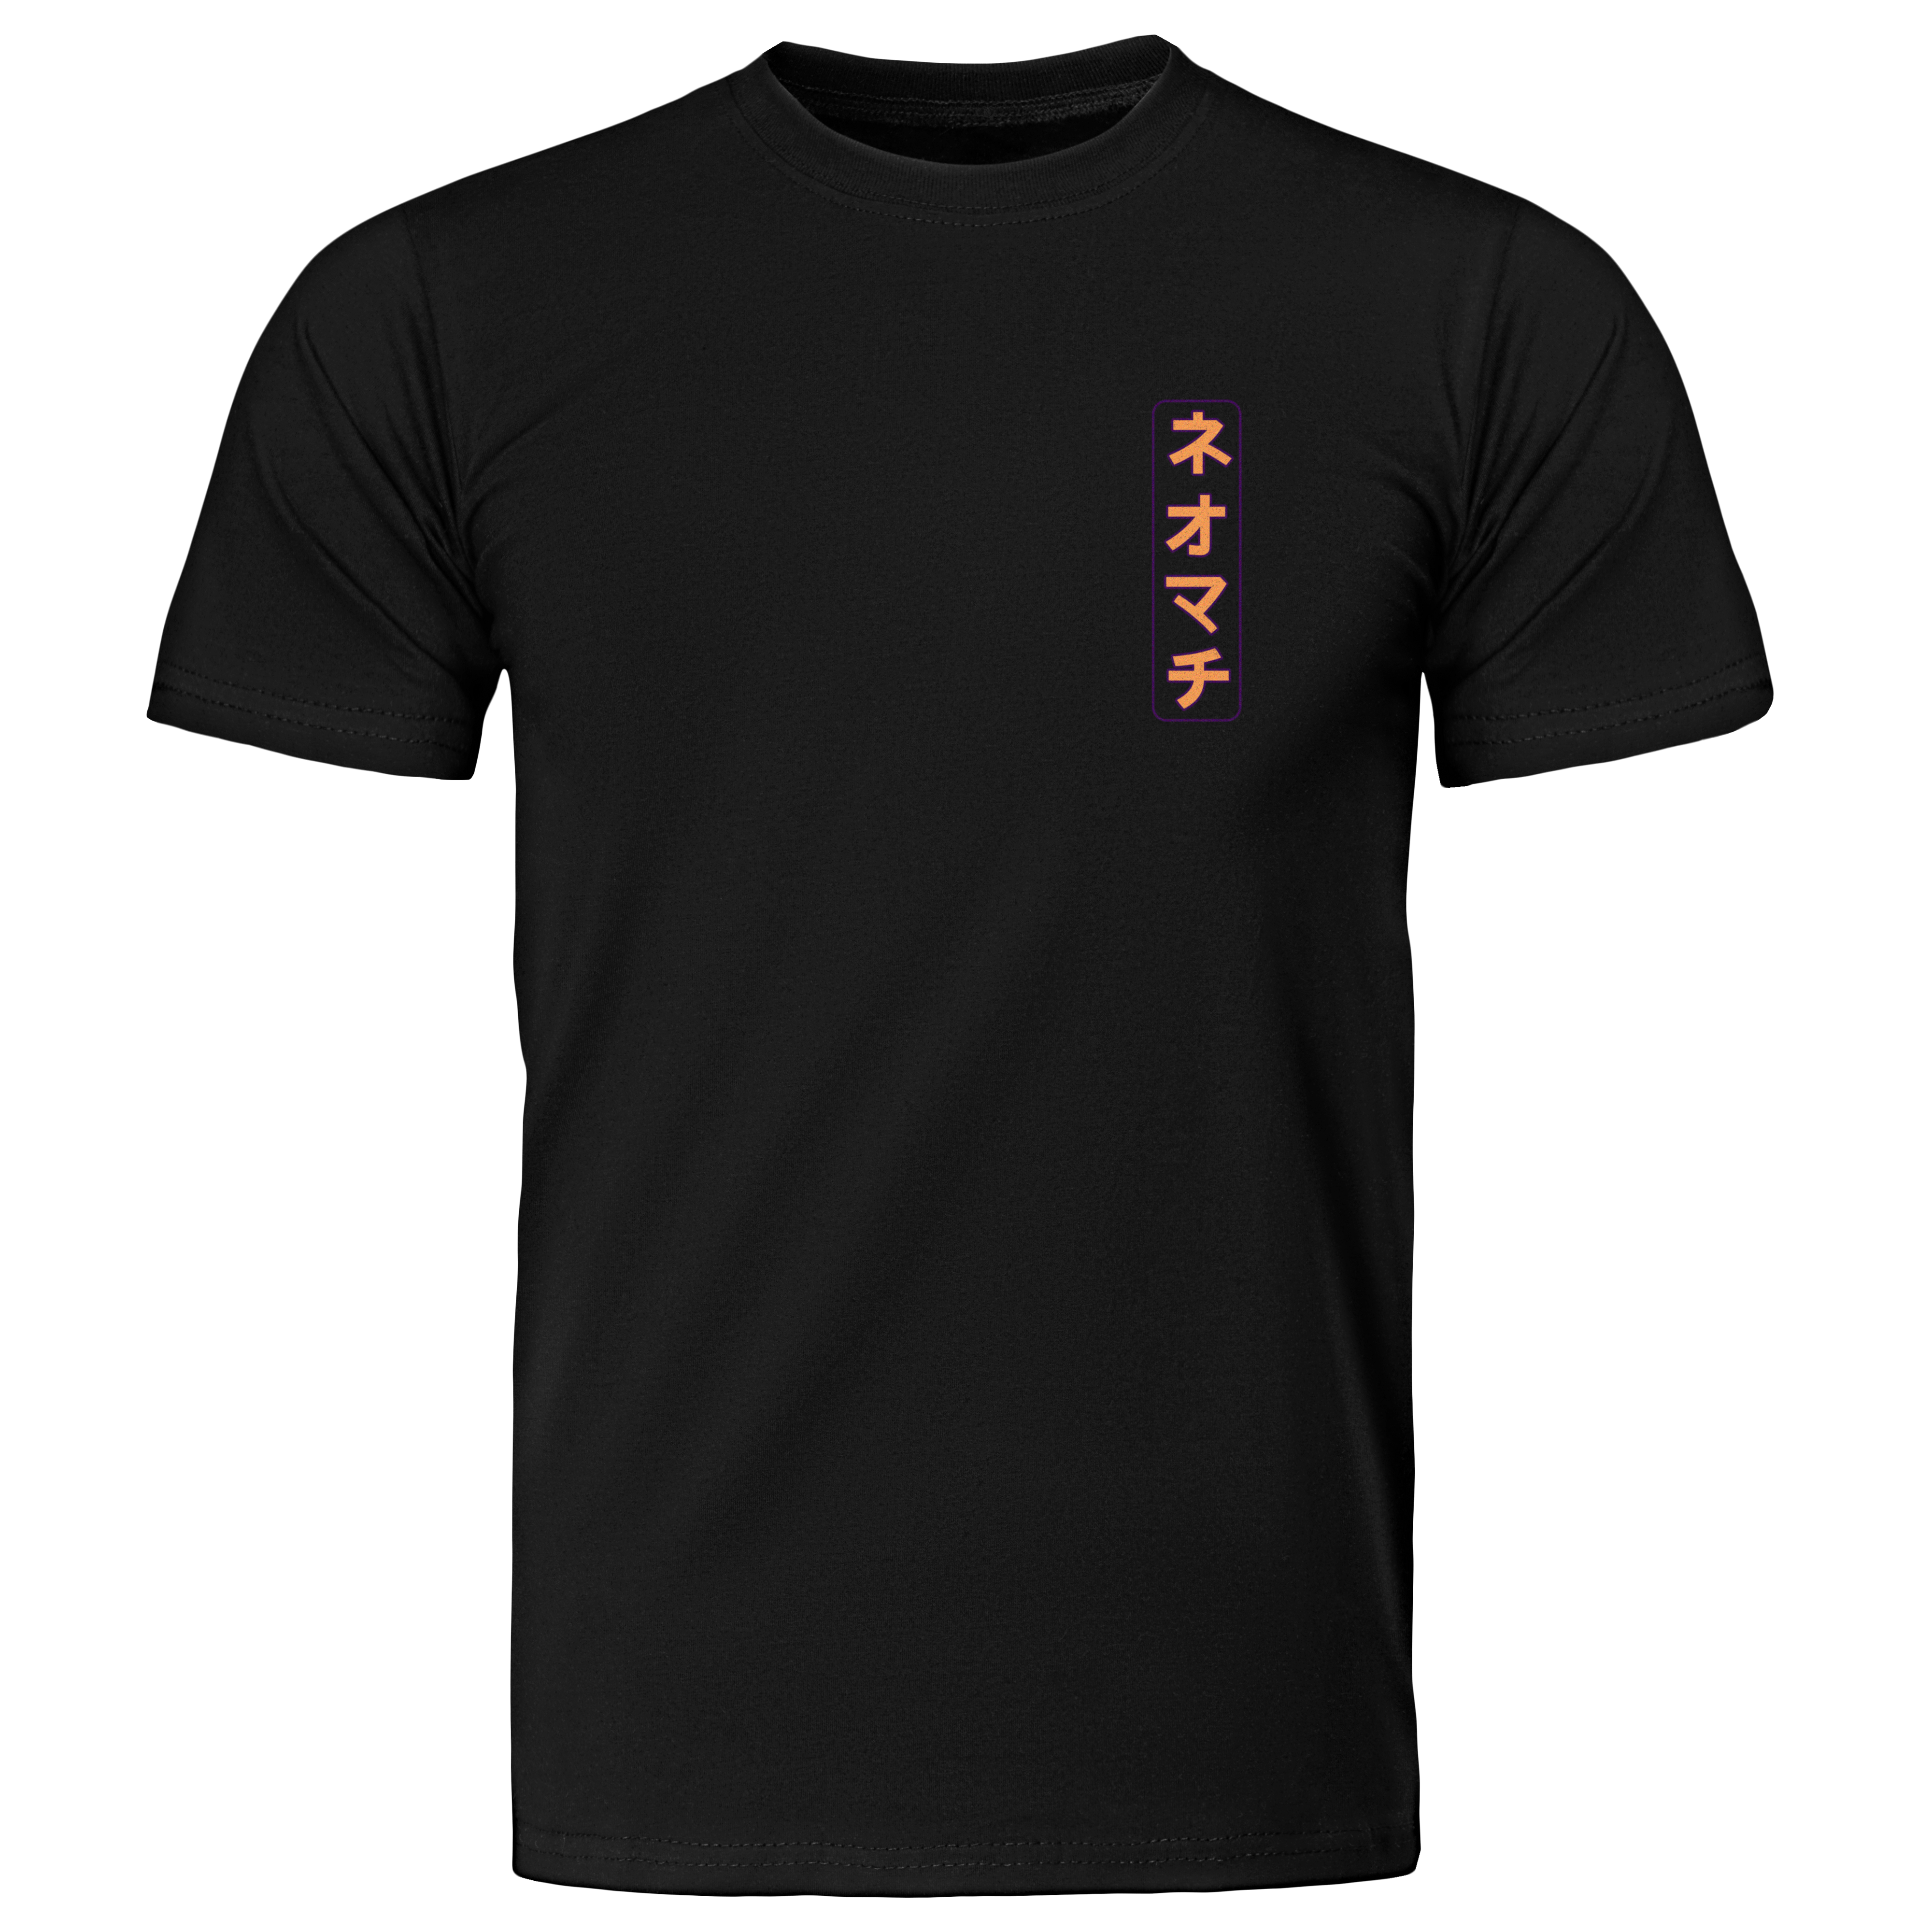 NEOMACHI KANAGAWA 2.0 T-shirt Cyberpunk Black